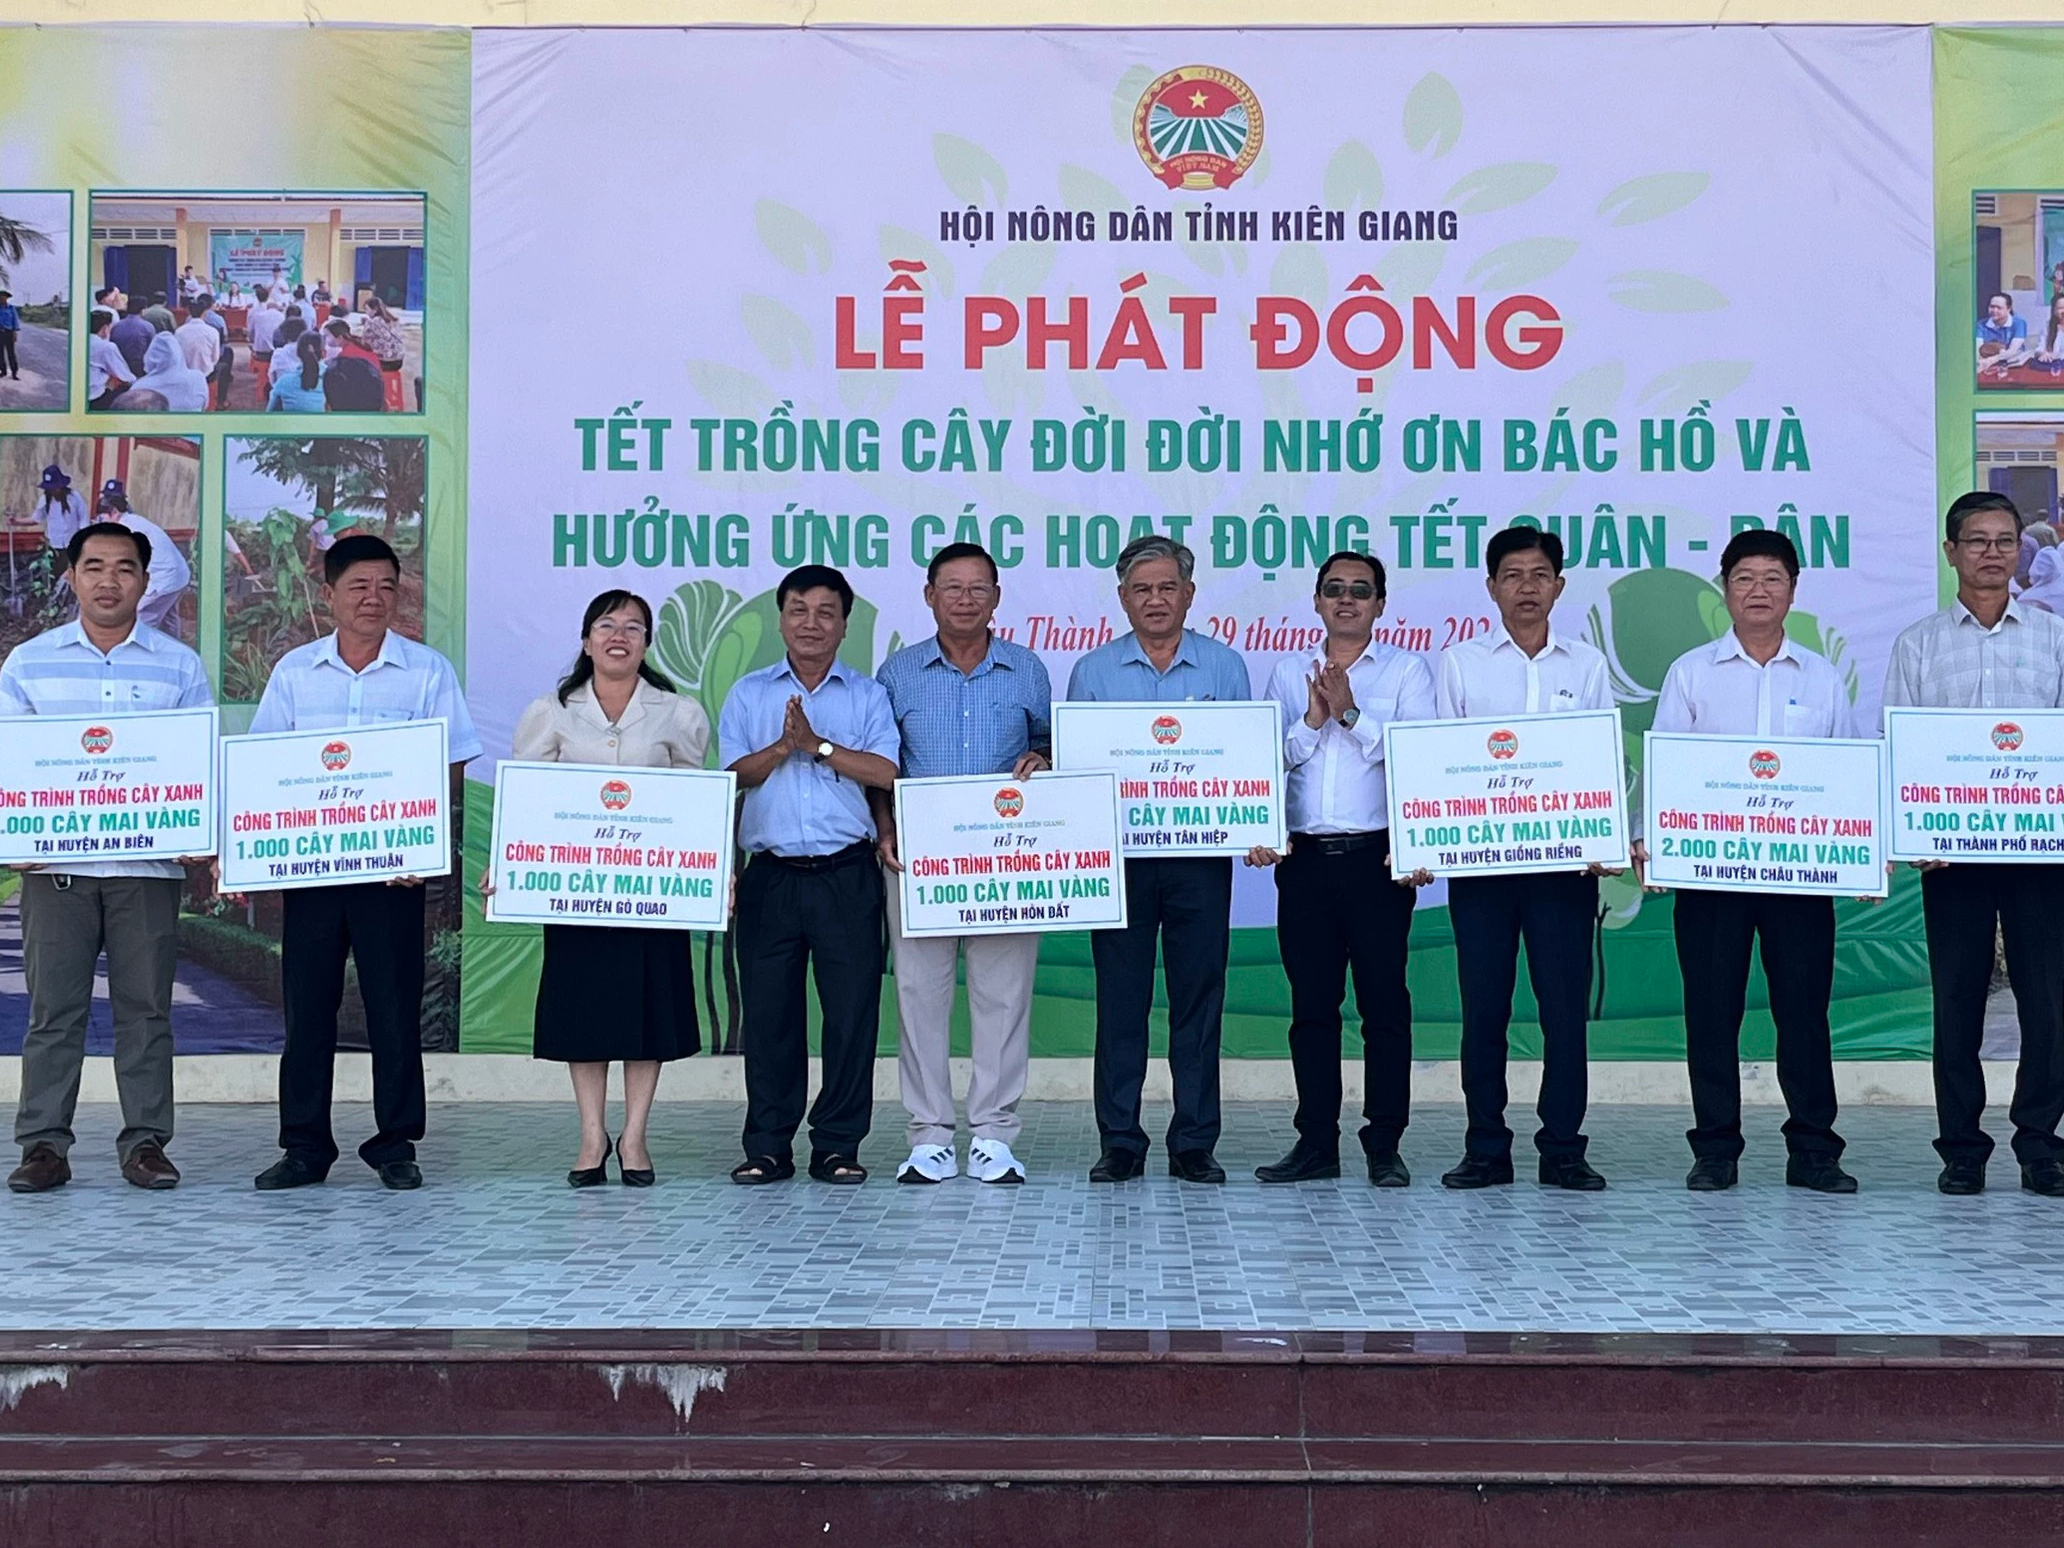 10.000 cây mai vàng sẽ được Hội Nông dân các cấp tỉnh Kiên Giang trồng ở 9 huyện, thành phố- Ảnh 1.